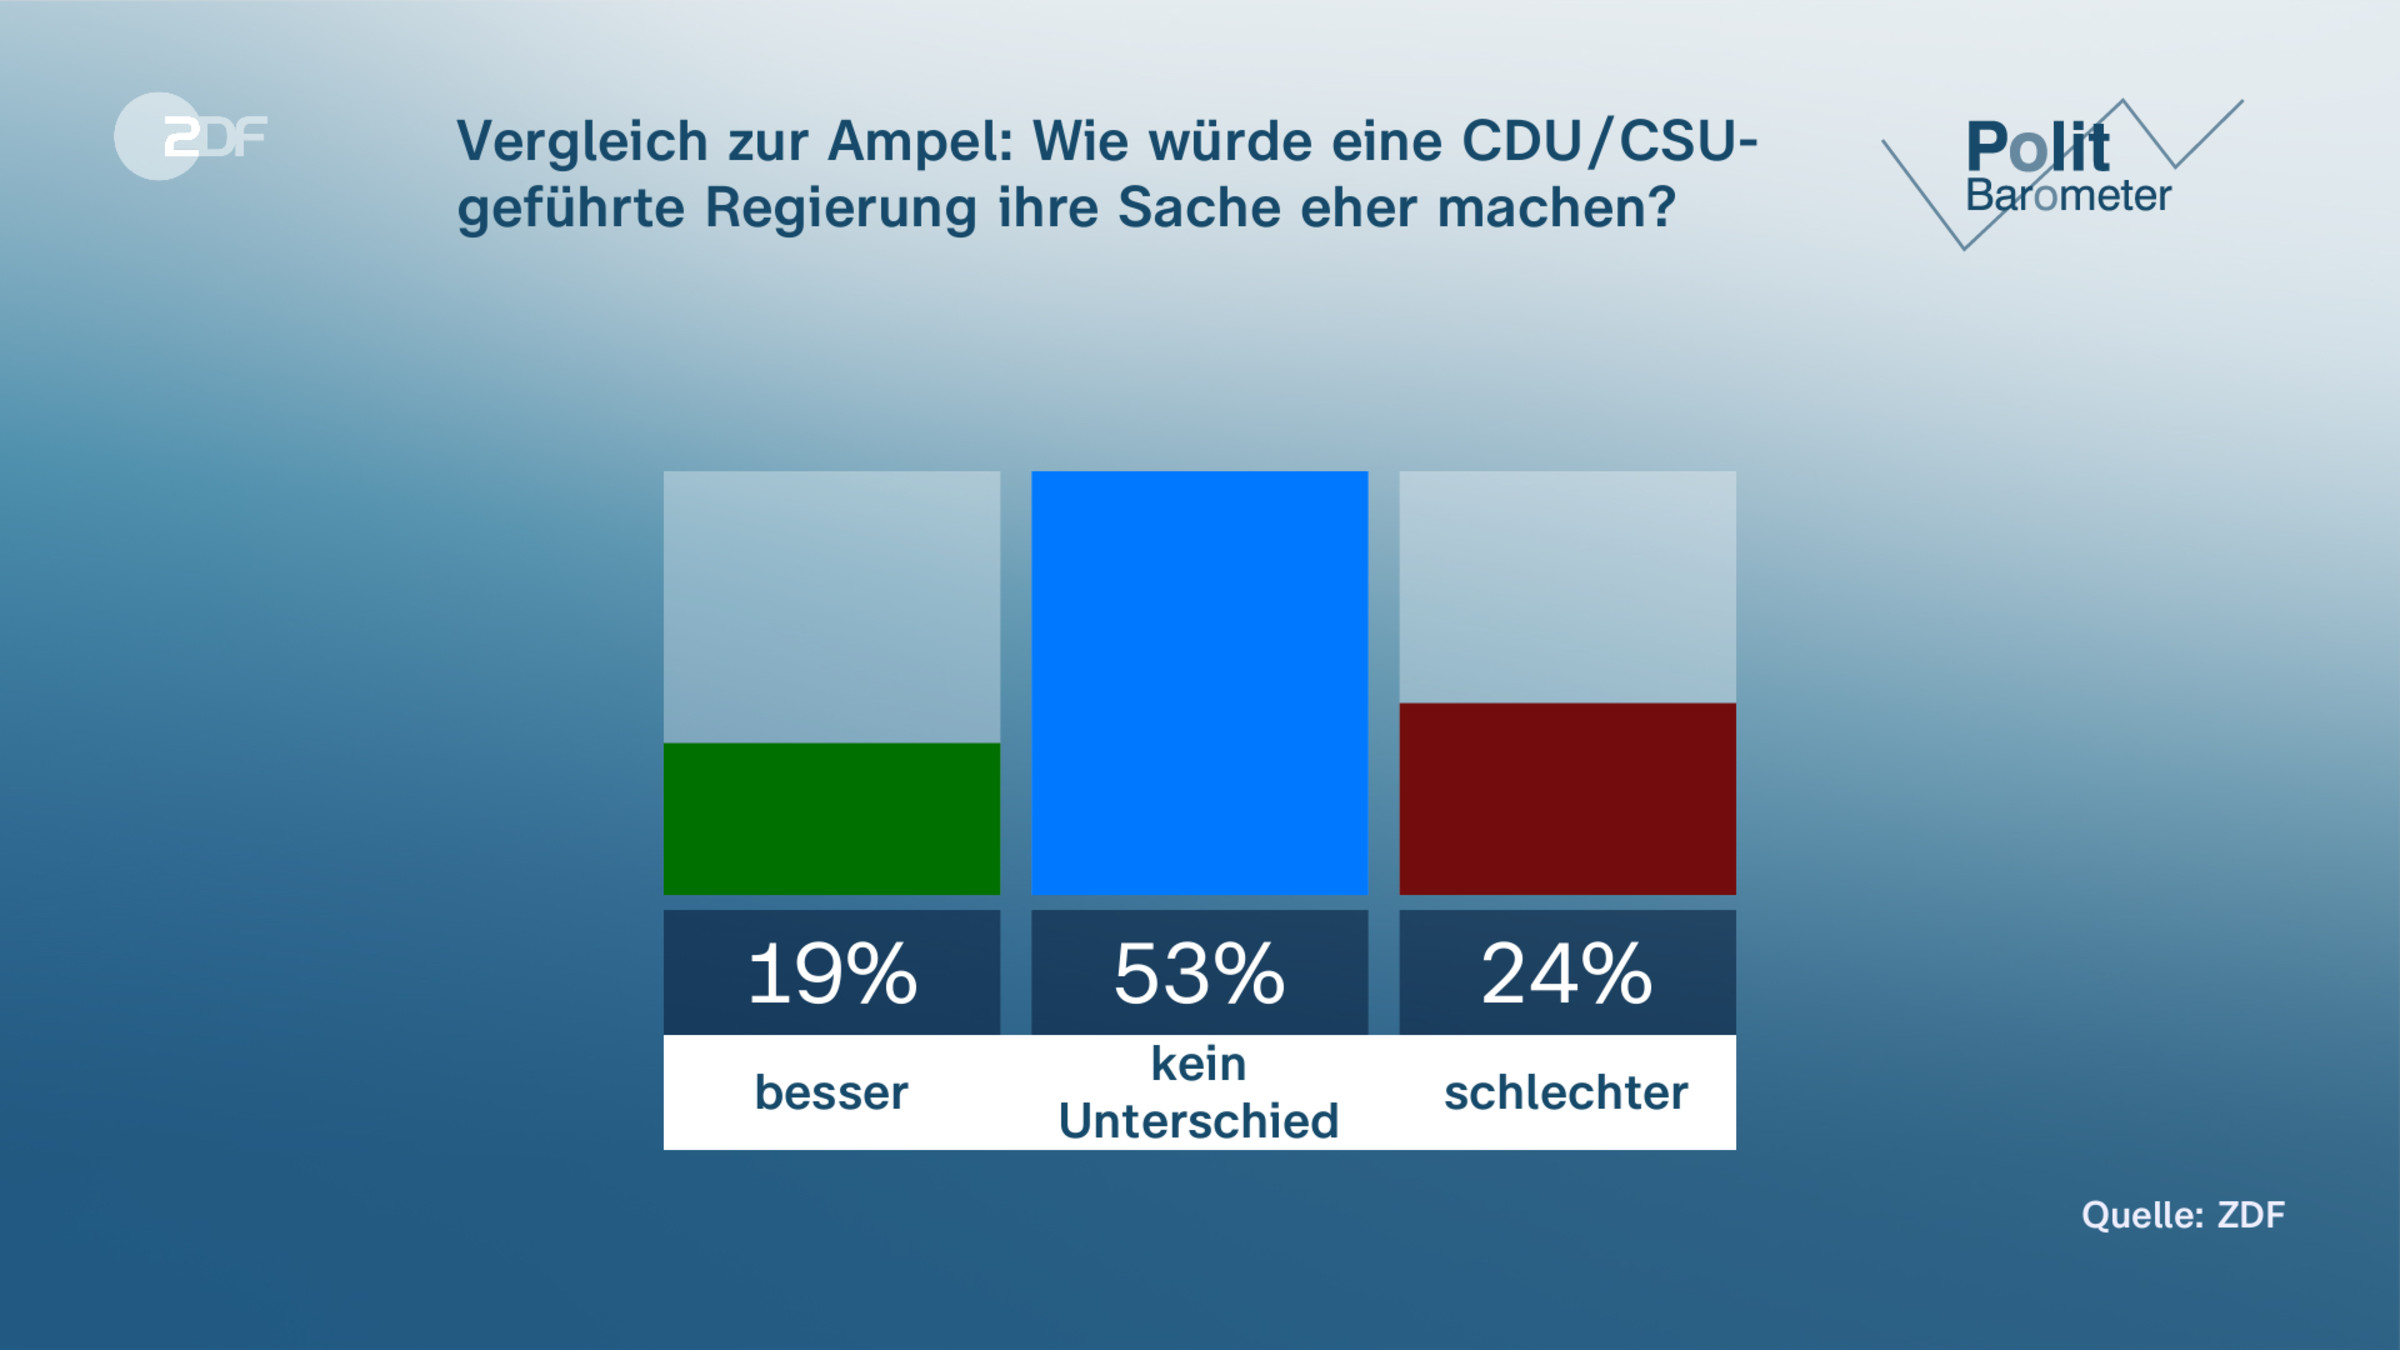 Vergleich zur Ampel: Wie würde eine CDU/CSU-|geführte Regierung ihre Sache eher machen?